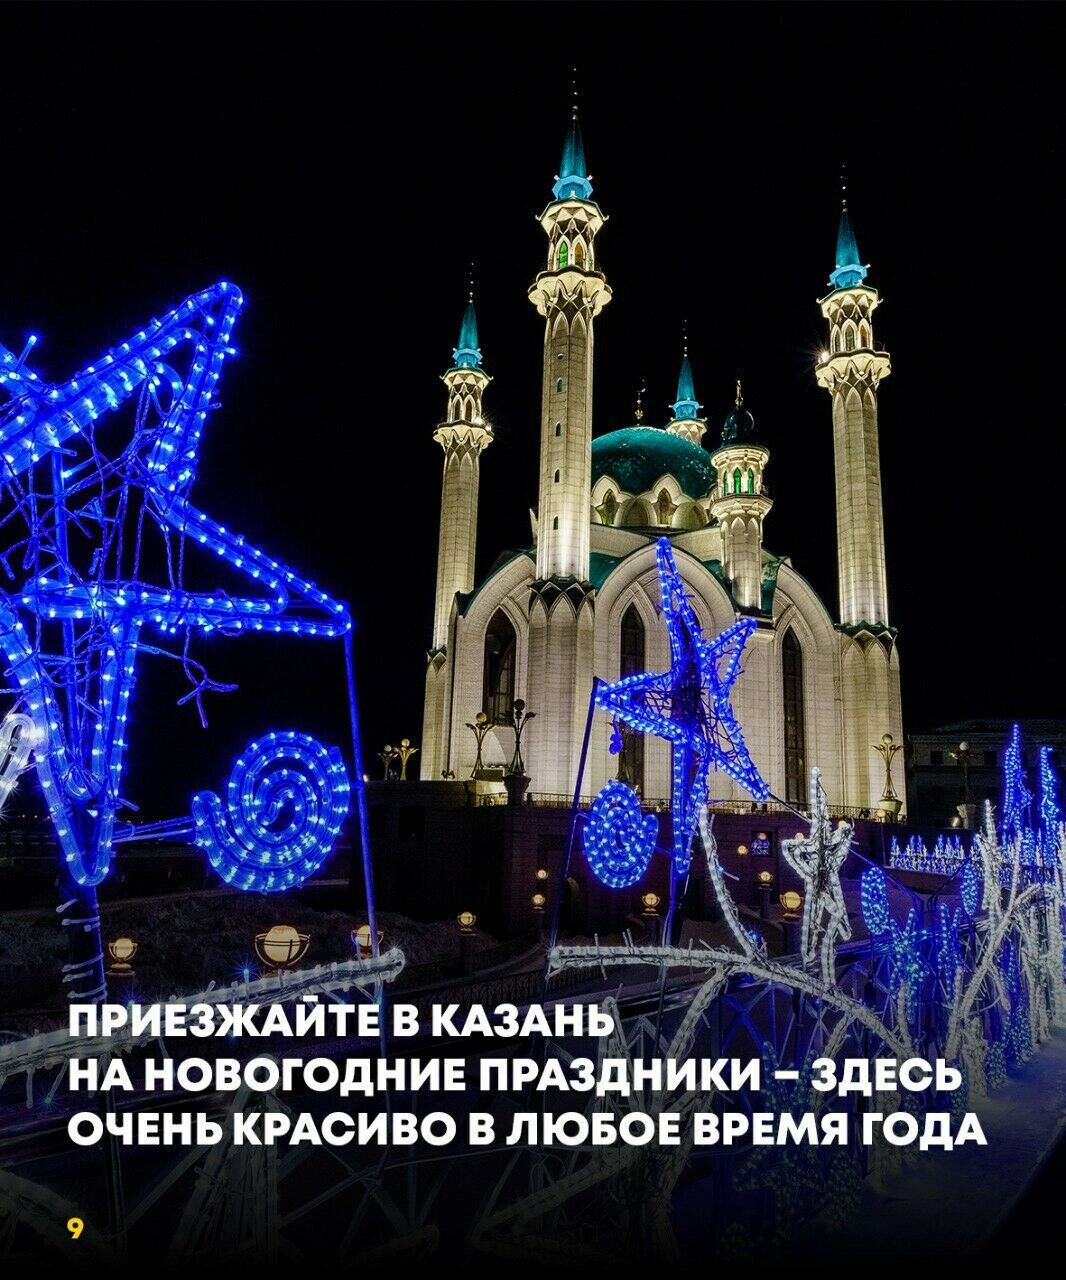 Казань подтверждает, что она является популярным местом для путешествий на Новый год